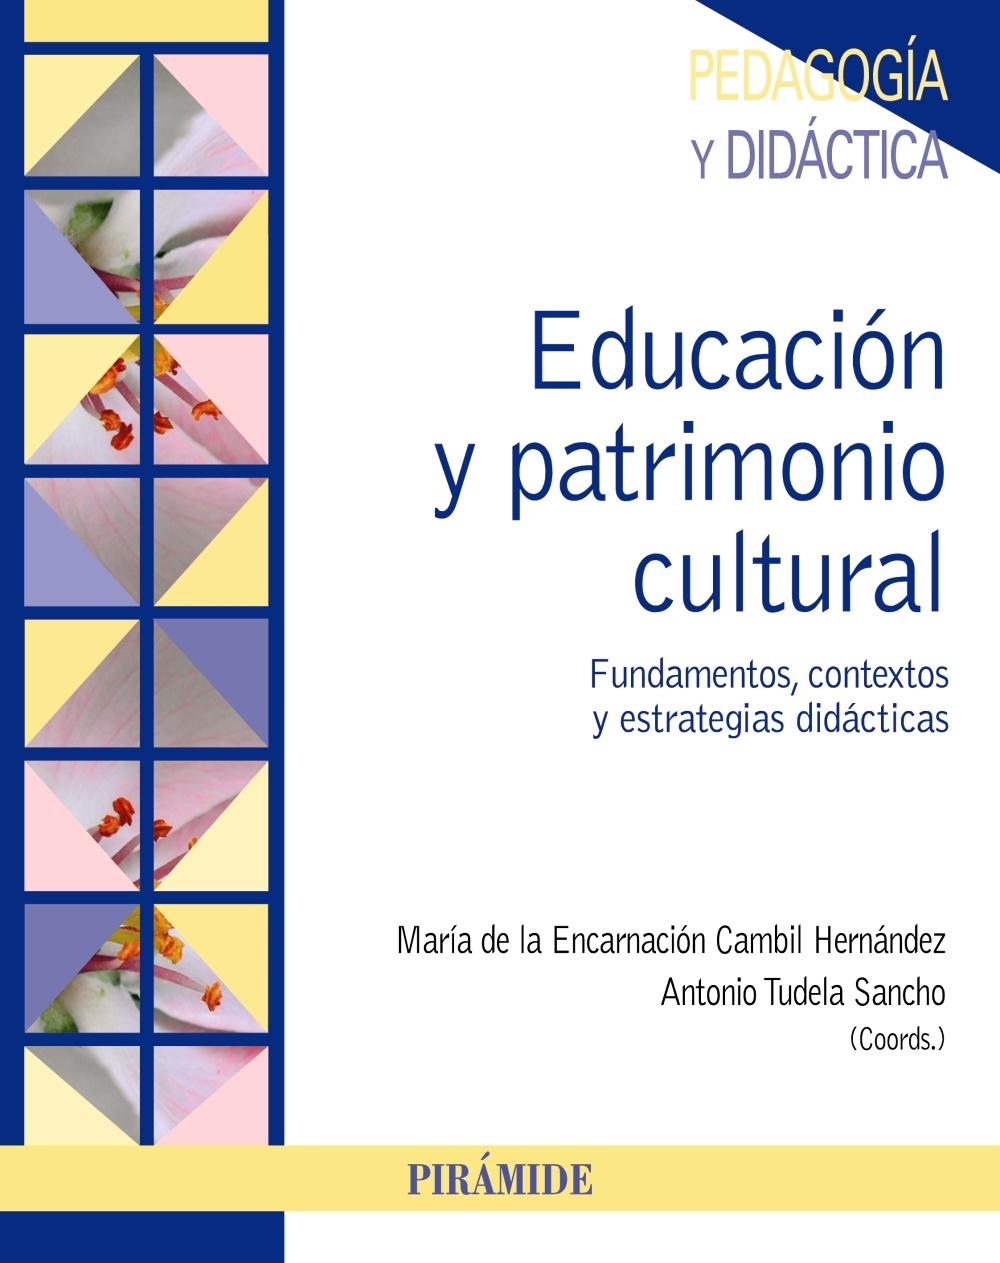 EDUCACIÓN Y PATRIMONIO CULTURAL "FUNDAMENTOS, CONTEXTOS Y ESTRATEGIAS DIDÁCTICAS"